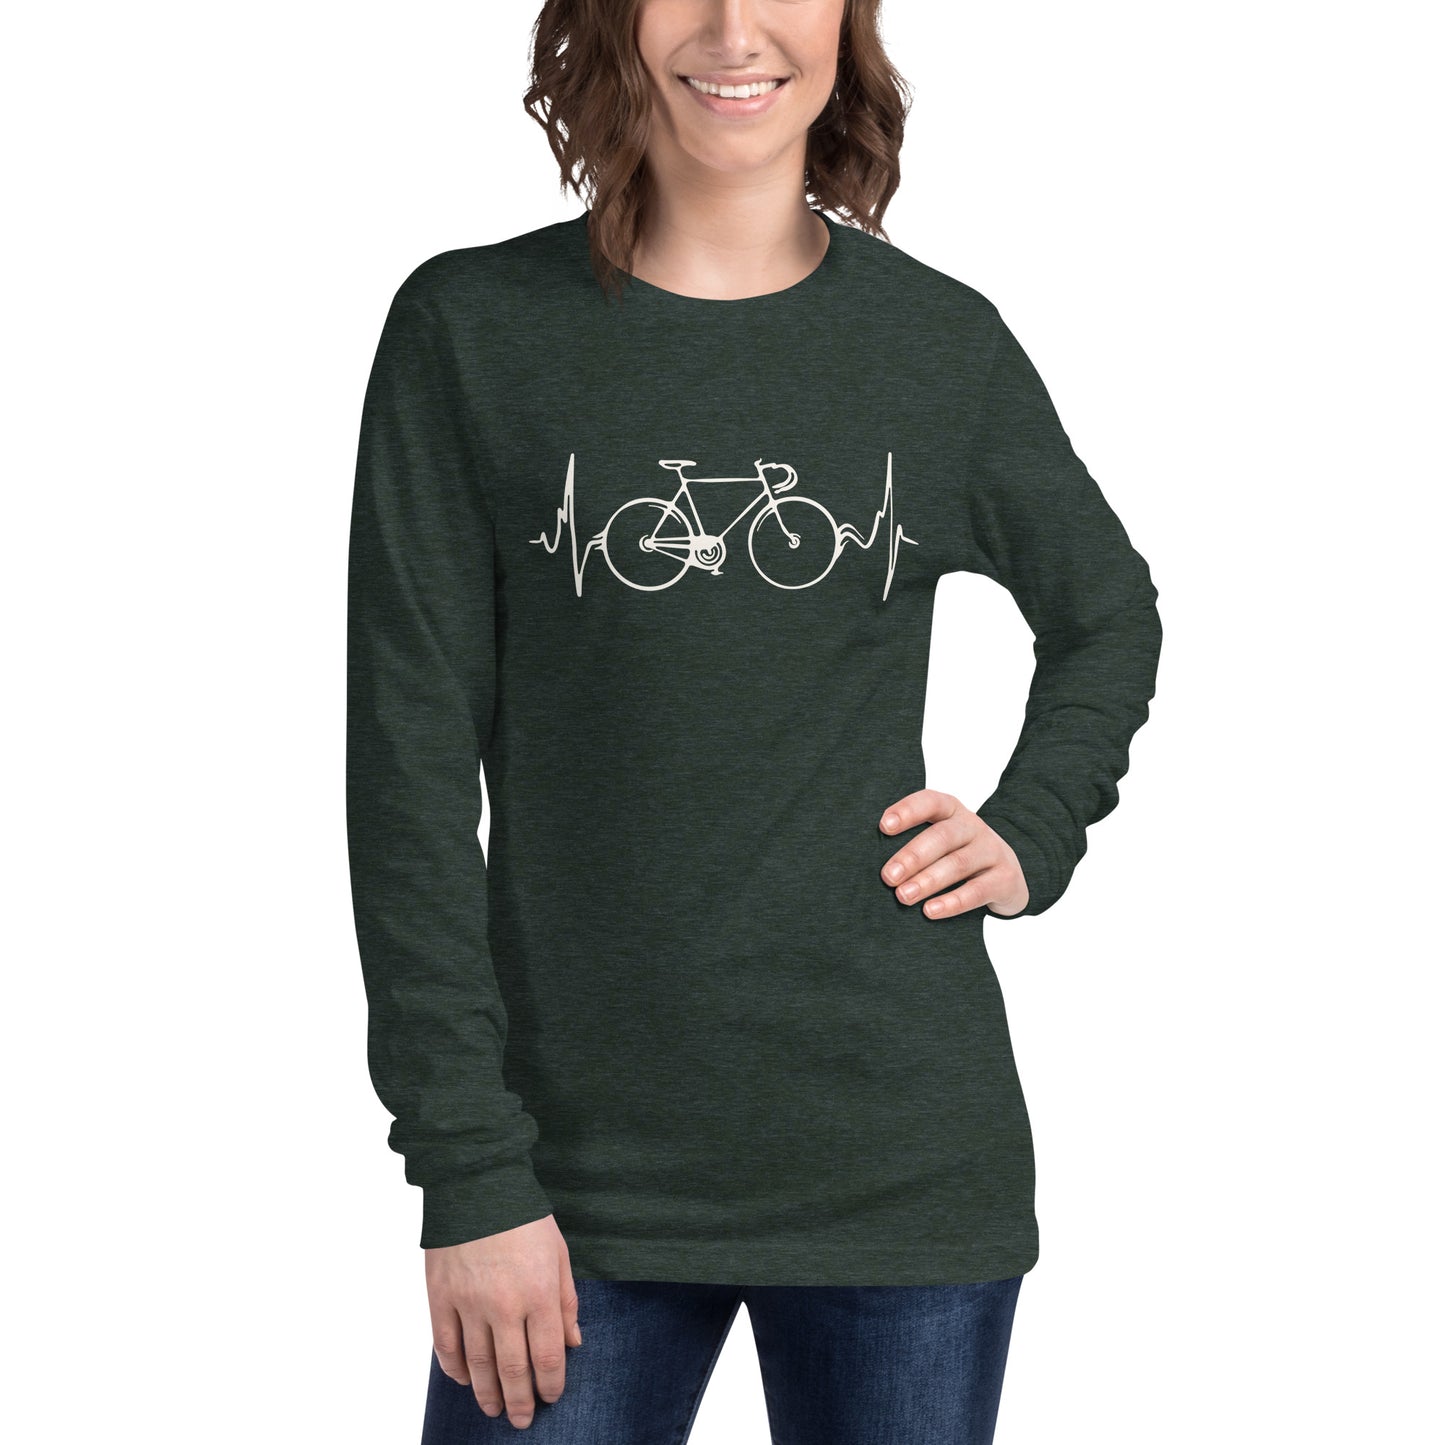 Ciclismo es vida camiseta unisex de manga larga